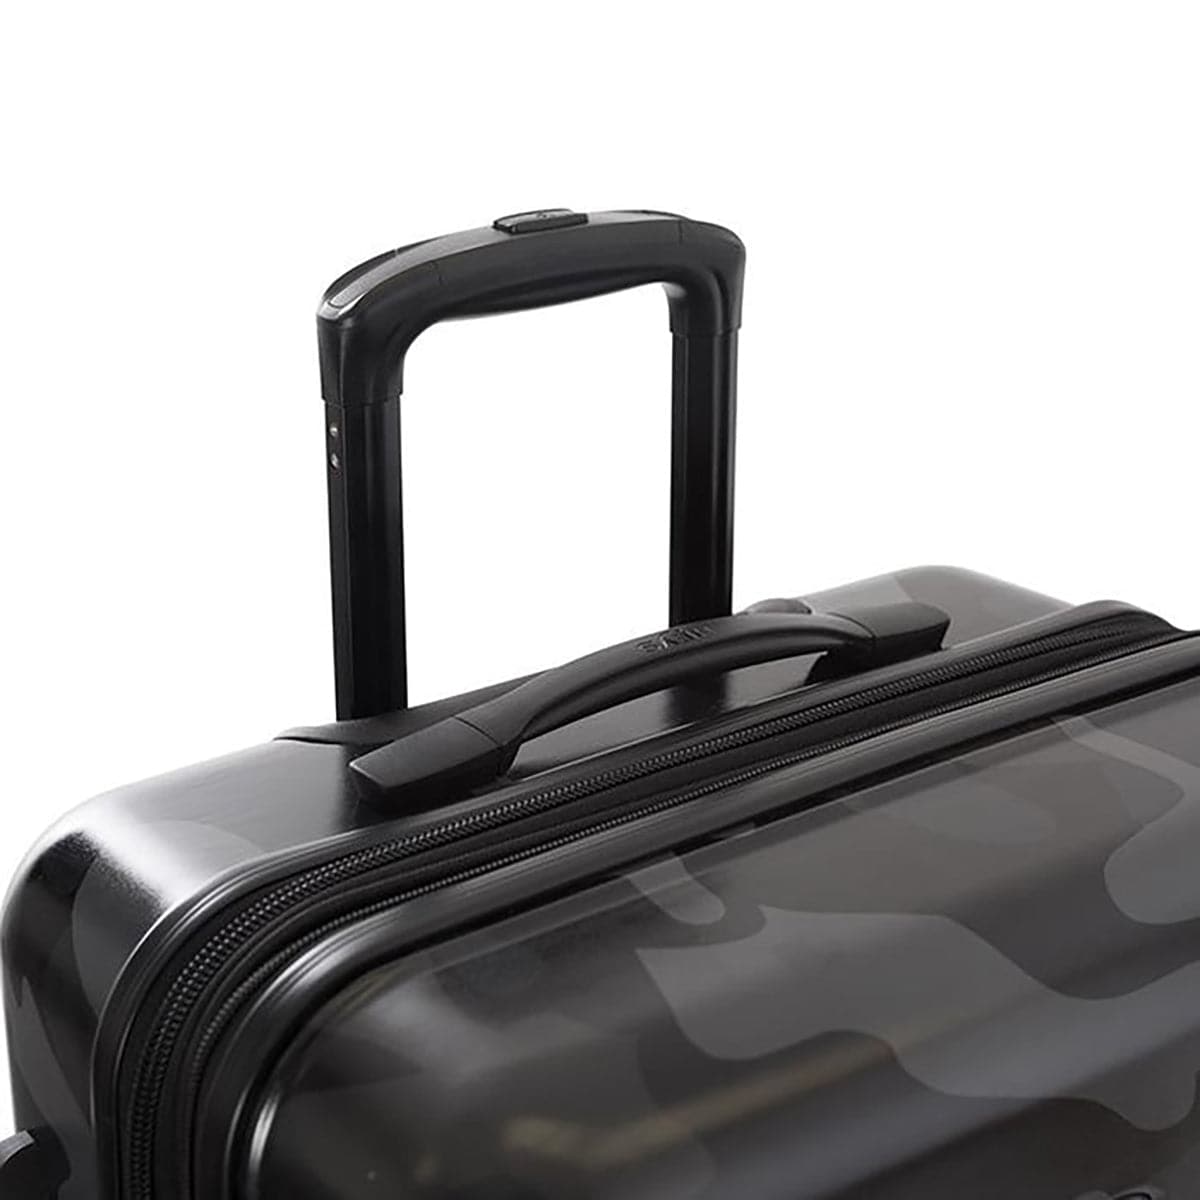 Heys 26" Camo Fashion Spinner Luggage